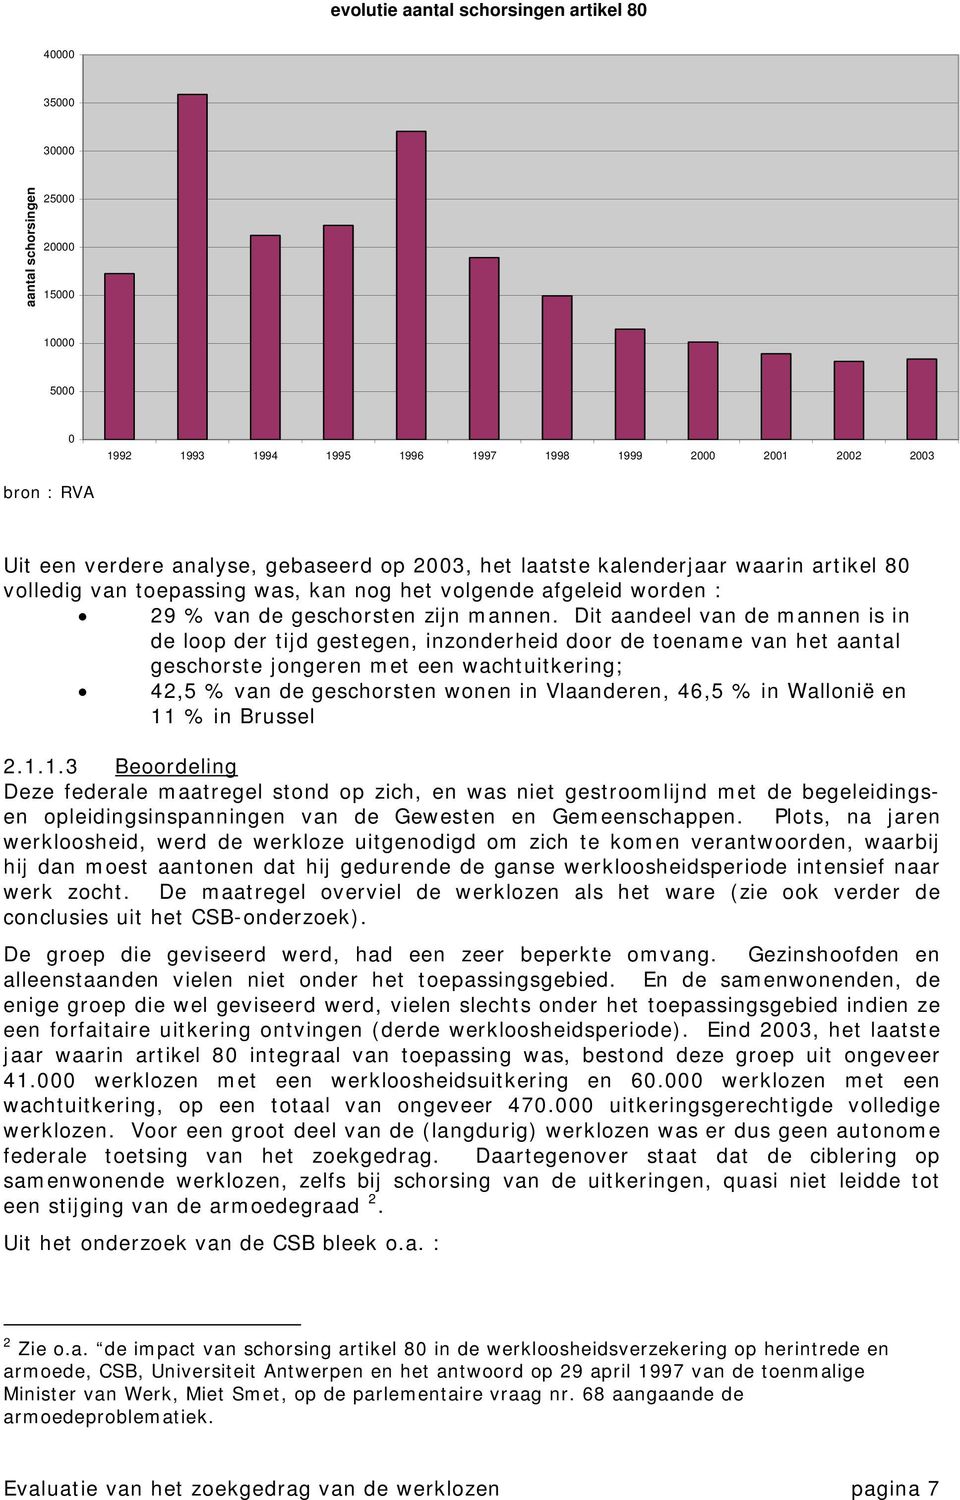 Dit aandeel van de mannen is in de loop der tijd gestegen, inzonderheid door de toename van het aantal geschorste jongeren met een wachtuitkering; 42,5 % van de geschorsten wonen in Vlaanderen, 46,5